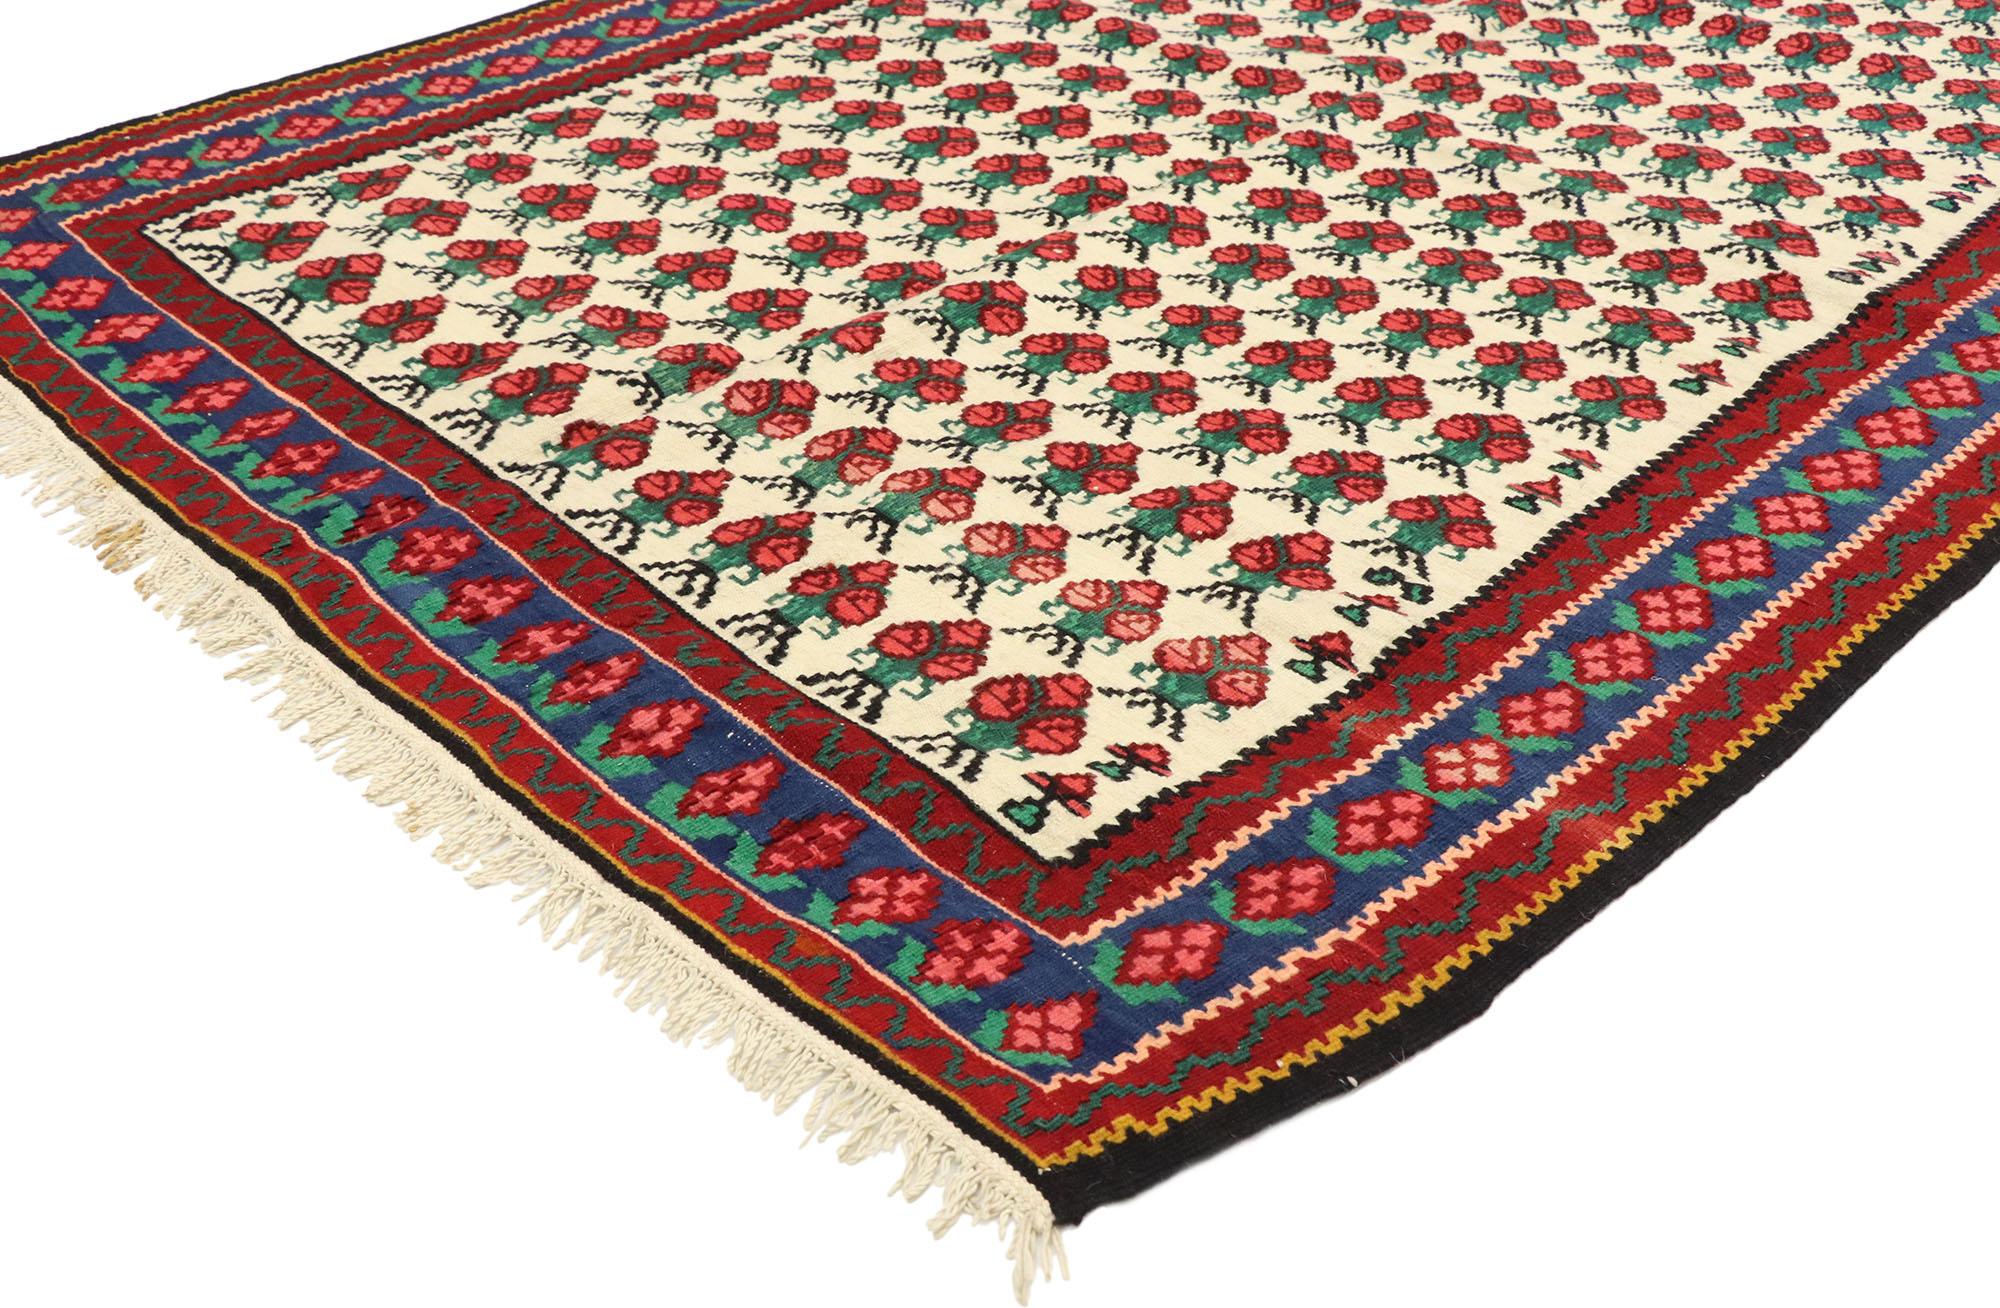 72143, alter geblümter persischer Kilim-Teppich im Americana-Stil. Mit seinem rustikalen Charme und seiner zeitlosen Anziehungskraft fügt sich dieser handgewebte Kilim-Teppich aus persischer Wolle mit Blumenmuster wunderbar in moderne, traditionelle